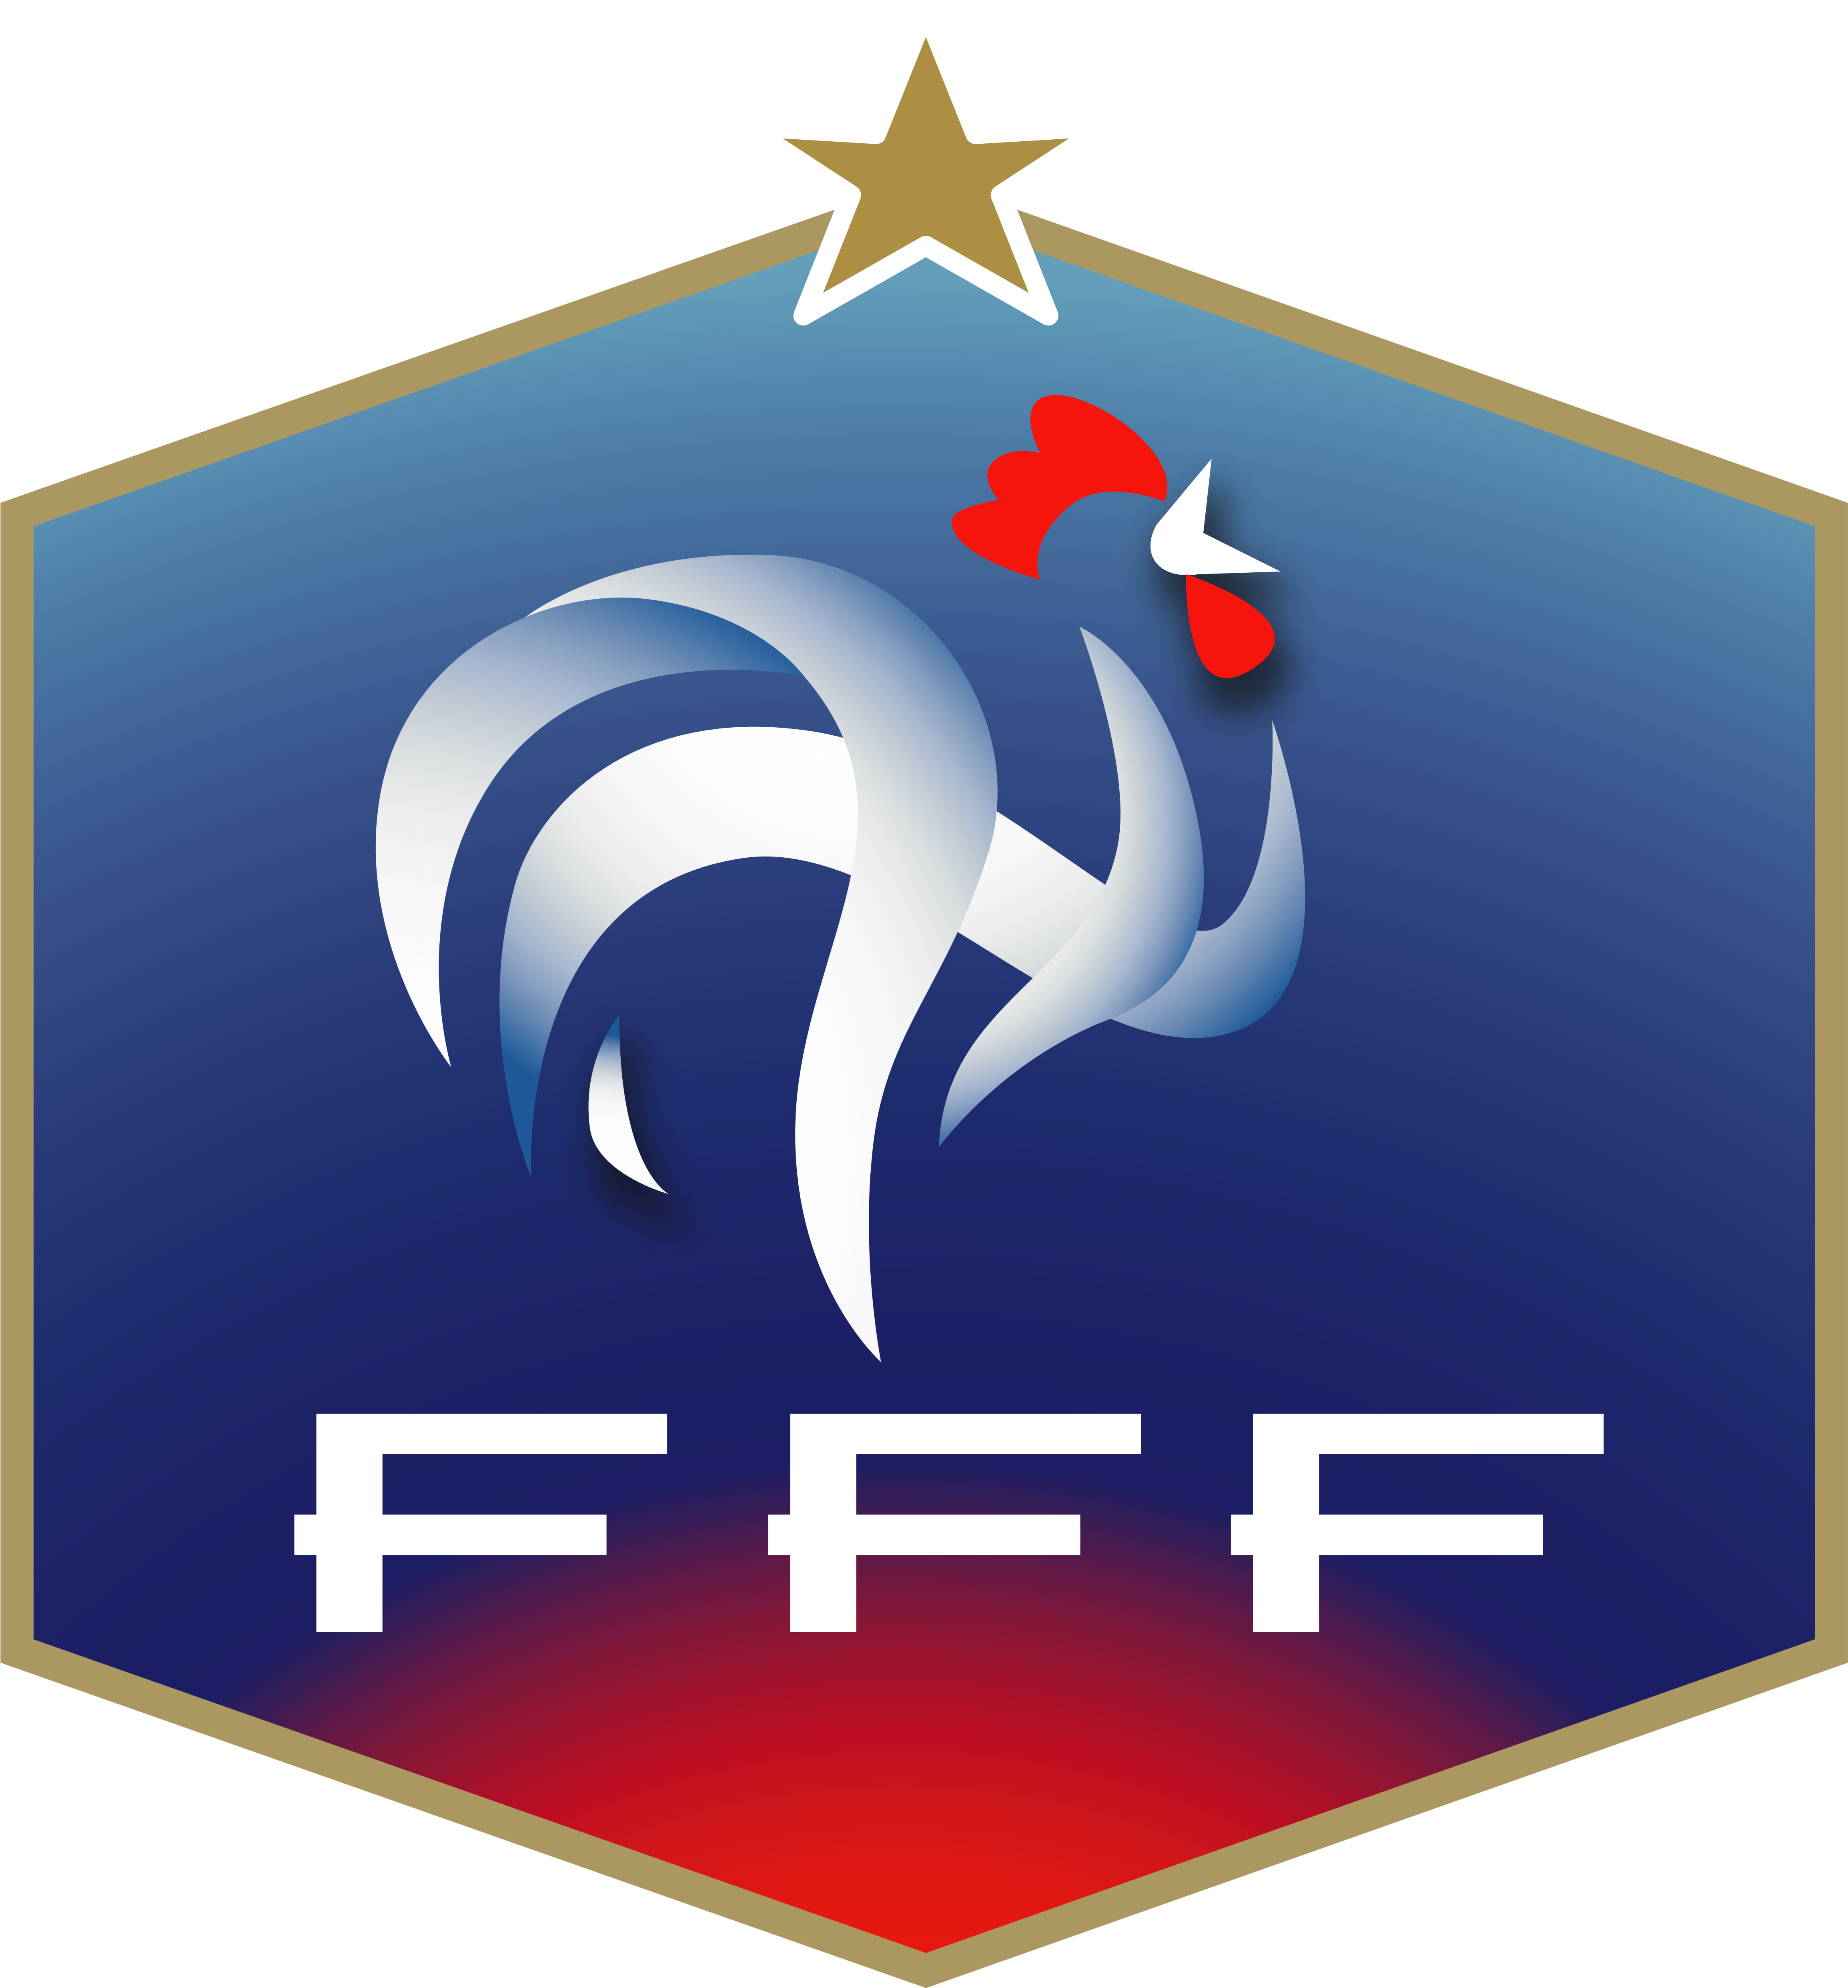 France National Football Team Logo, Crest - Dream League Soccer Logo France (4623x5000)